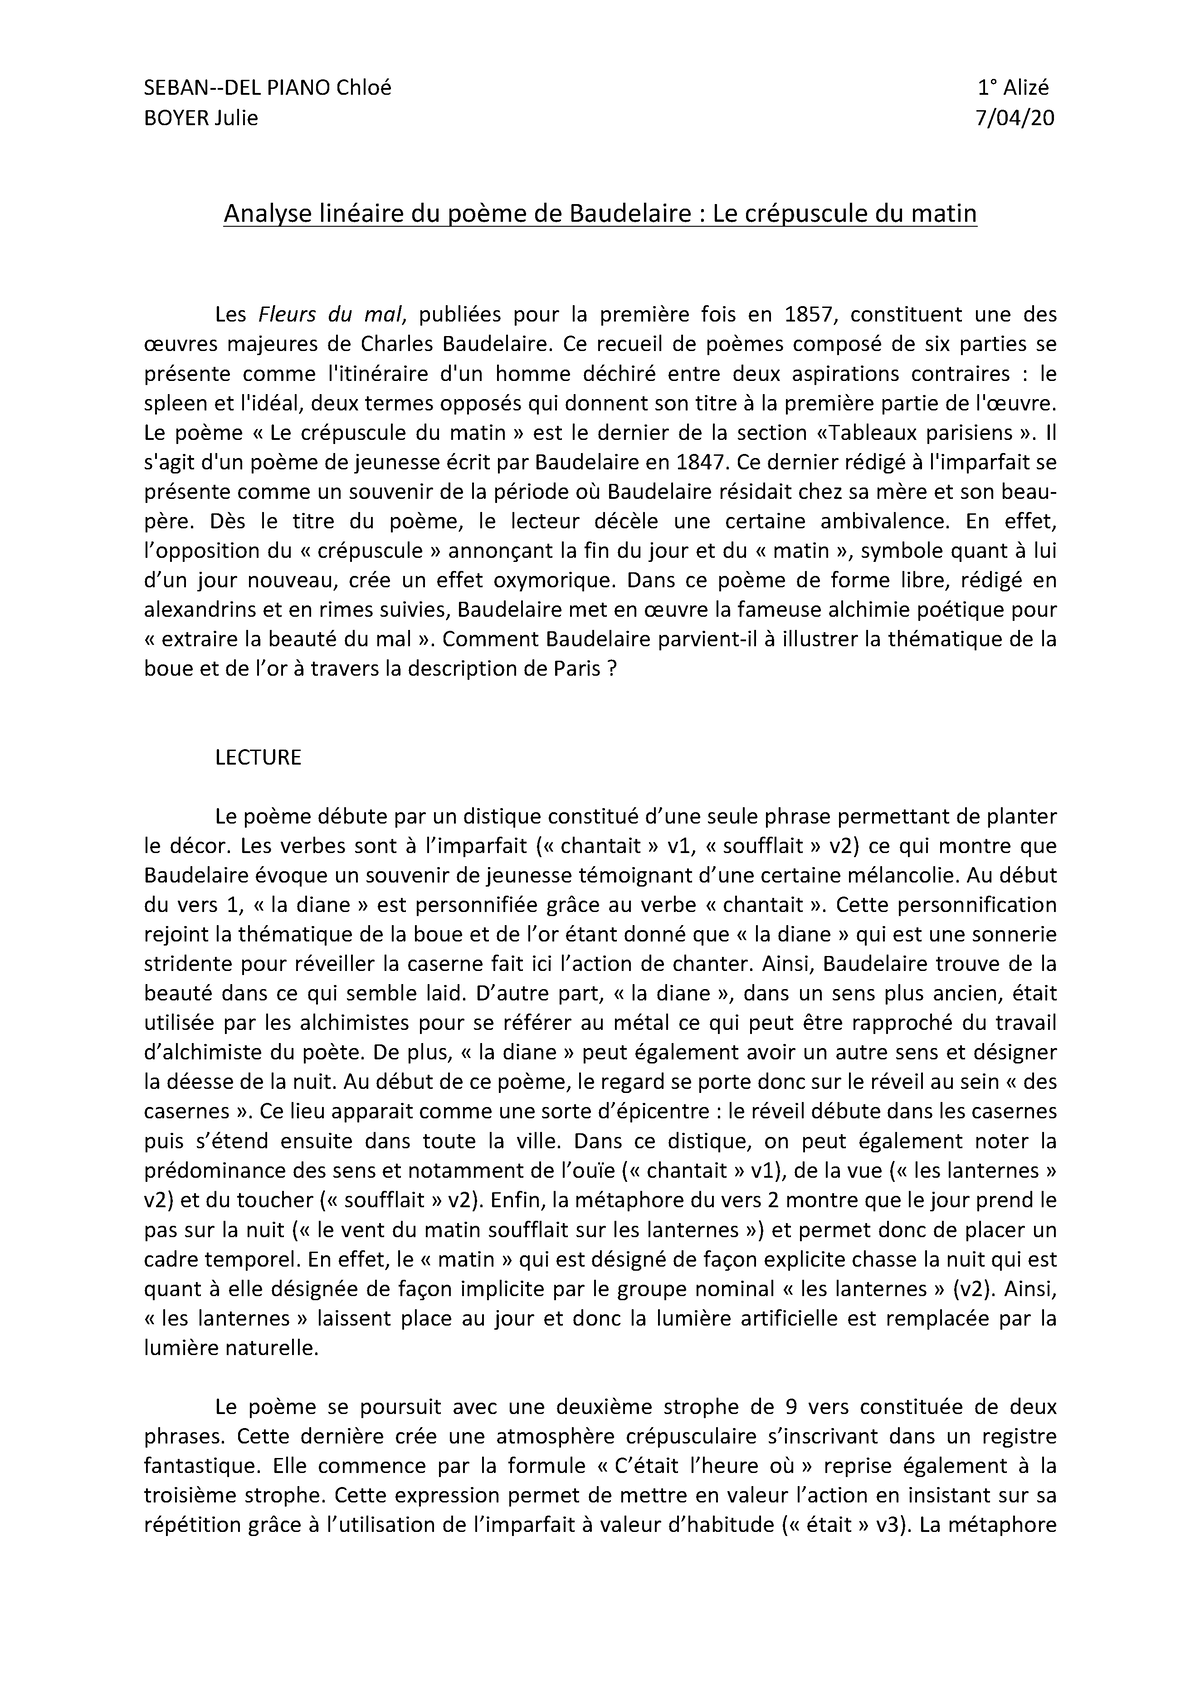 Baudelaire le crc389puscule du matin - BOYER Julie 7/04/20 Analyse ...